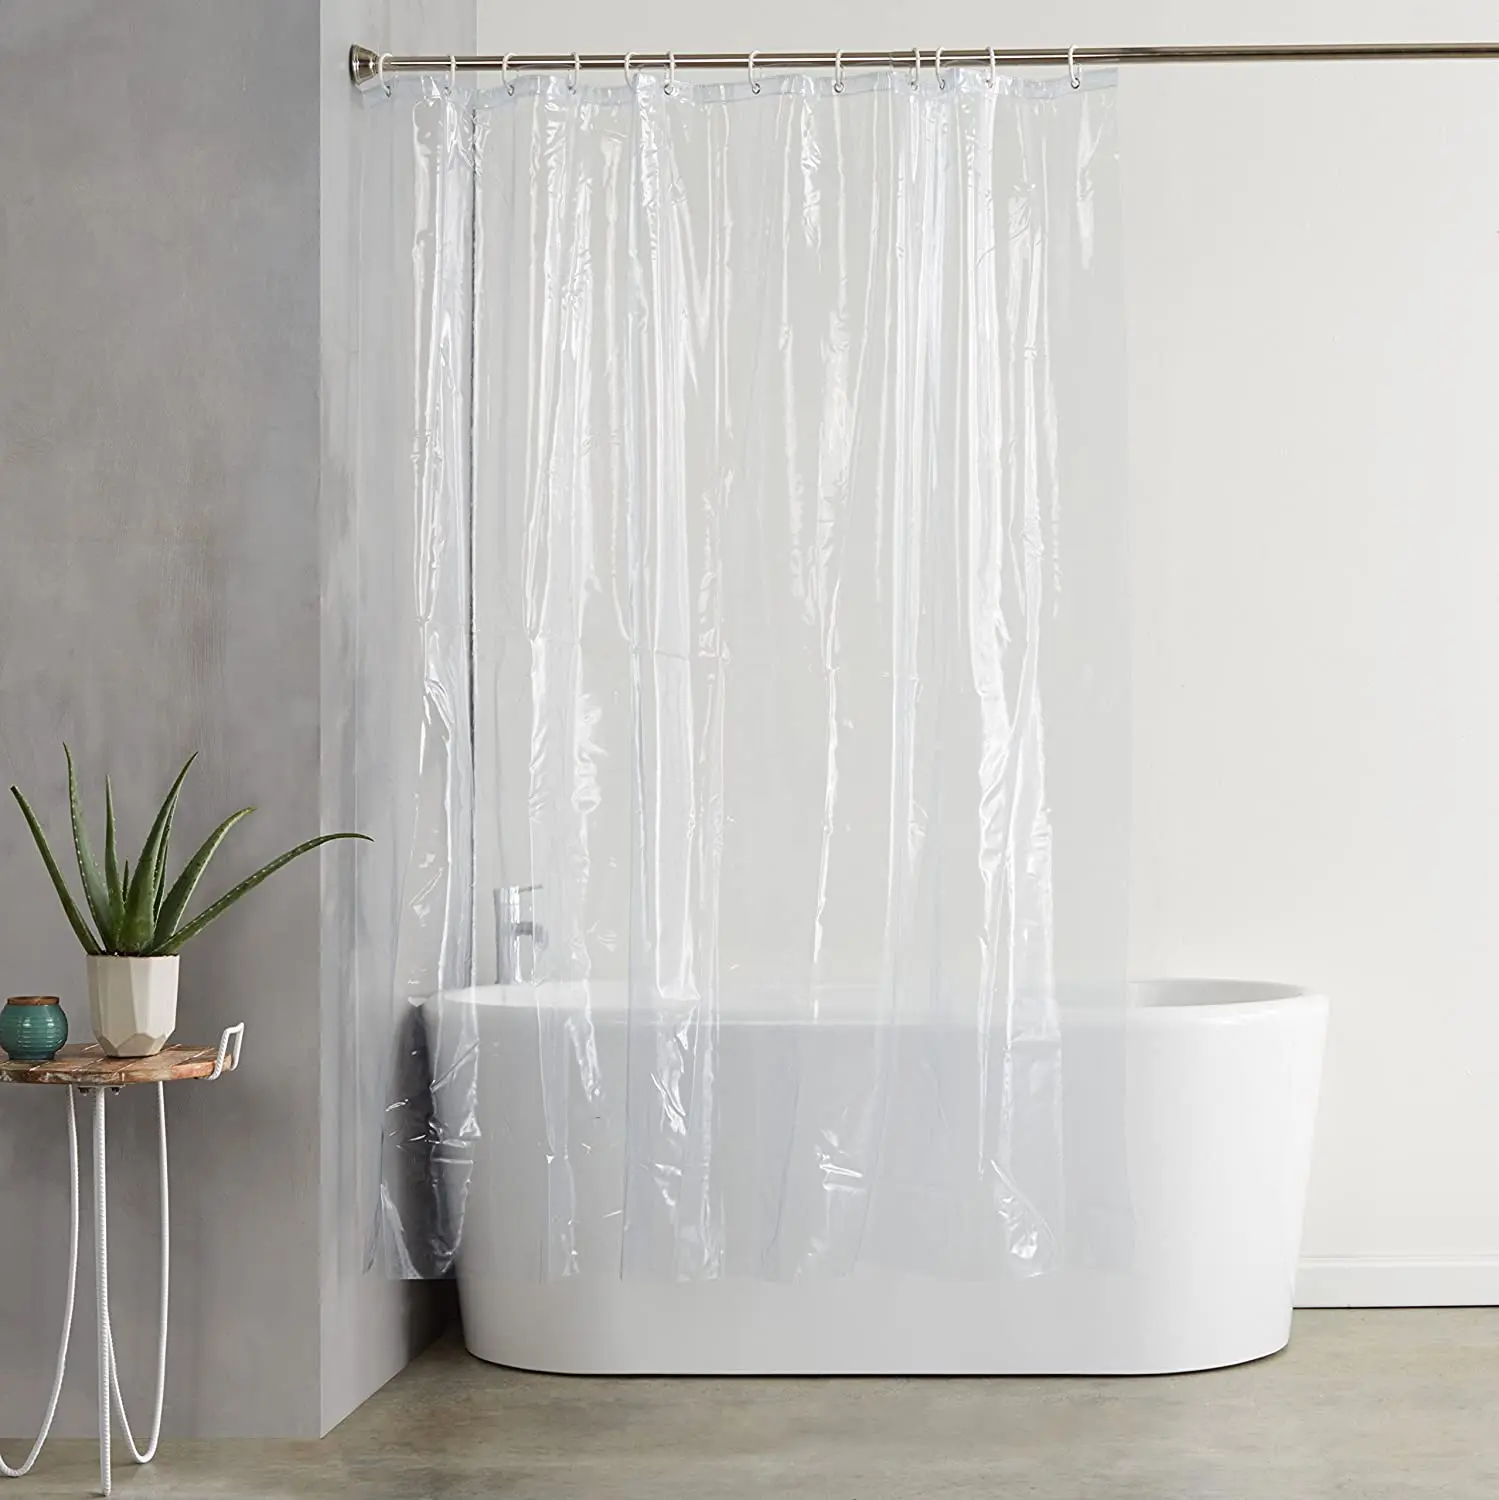 i @ home prueba de agua al por mayor moderno grueso cortinas ducha  transparente baño con cenefa